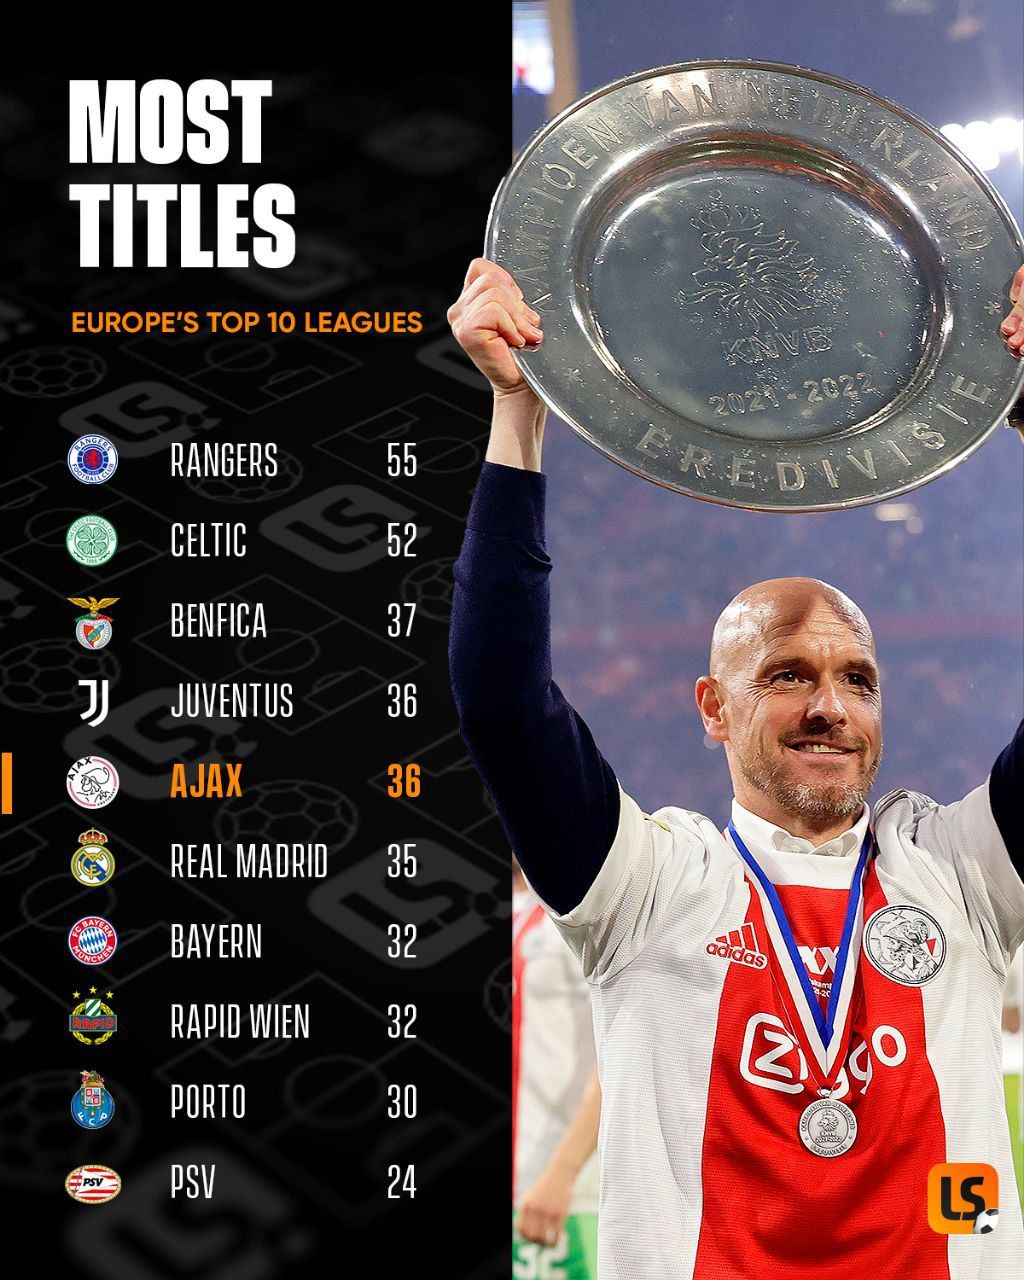 بیشترین تعداد قهرمانی در لیگ در بین 10 لیگ برتر اروپا